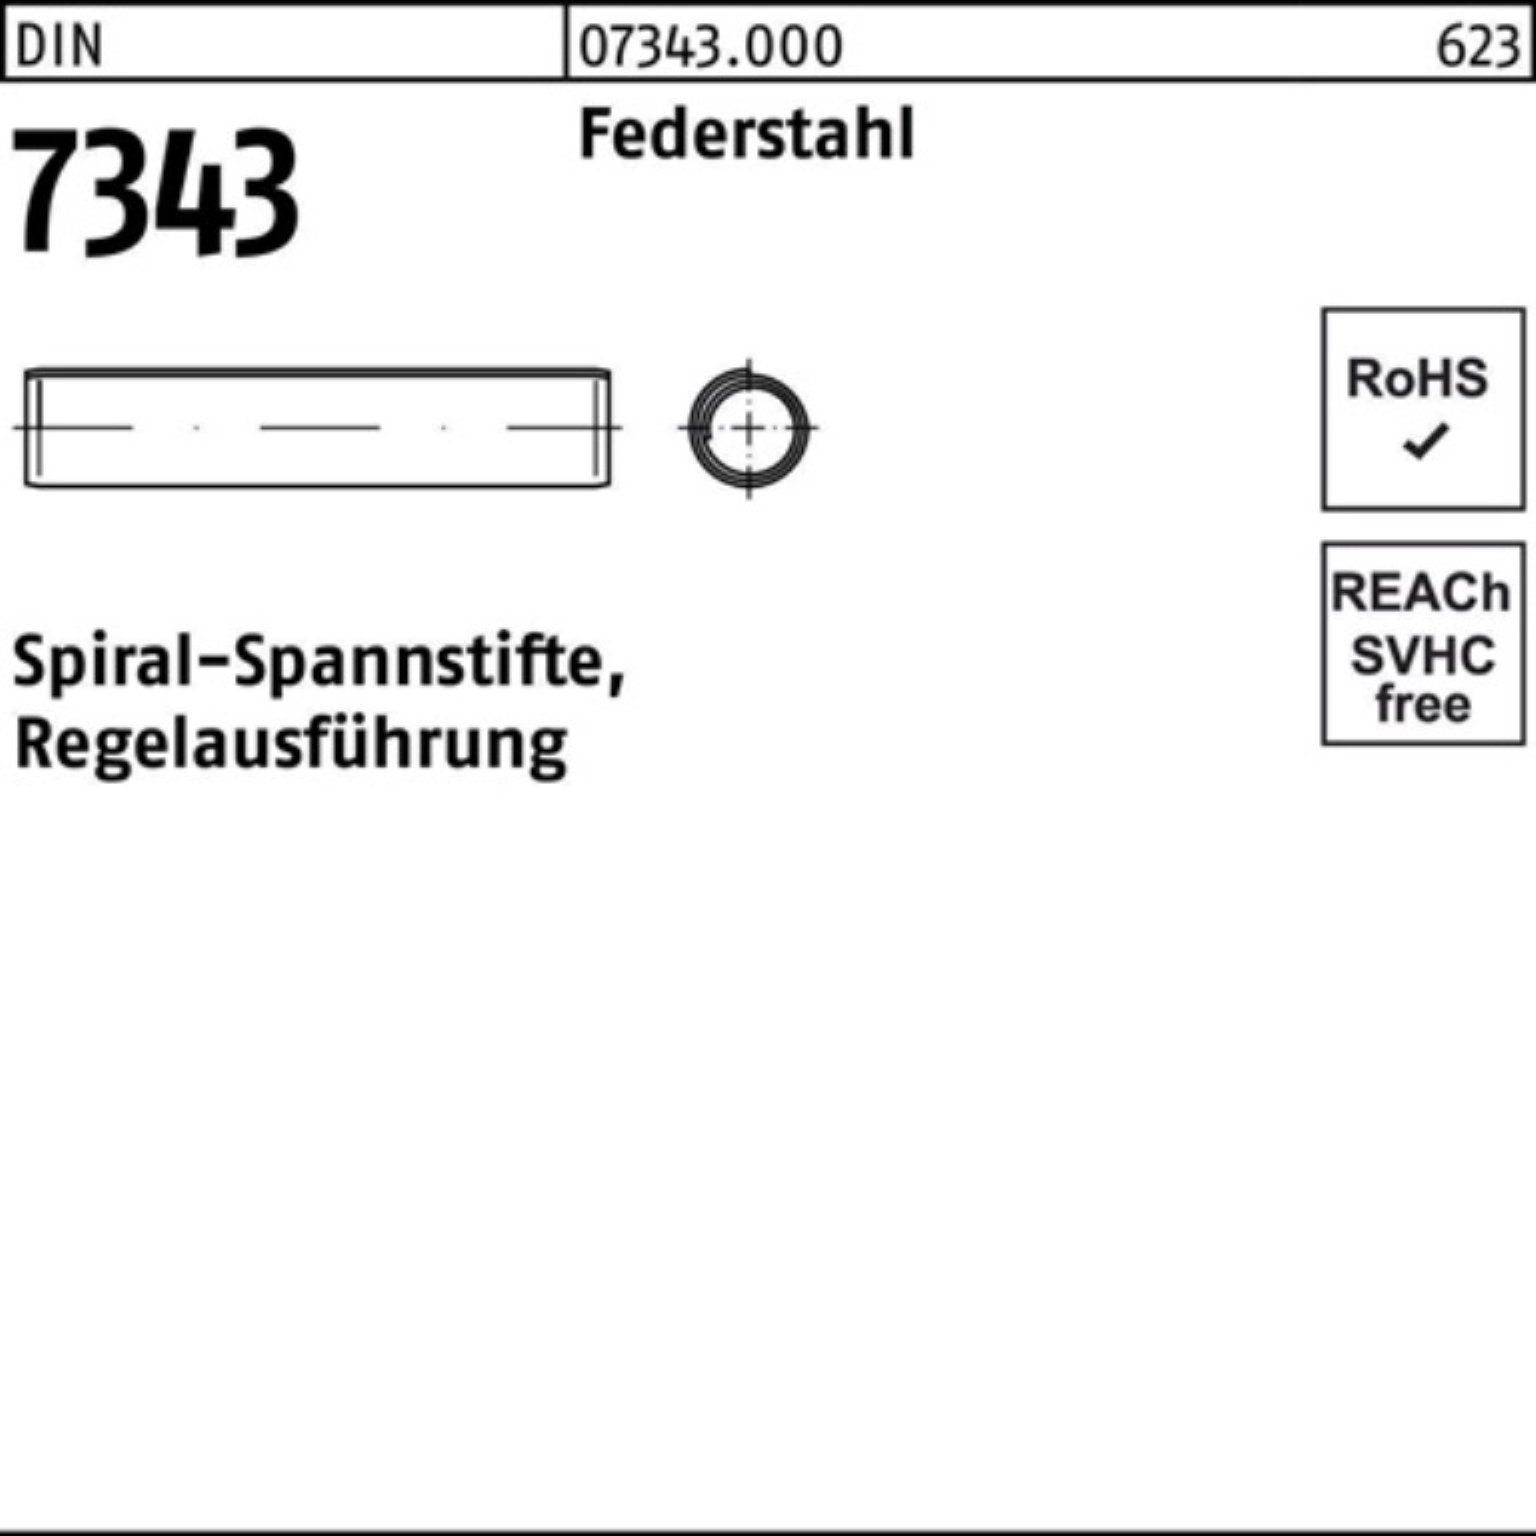 Reyher Spiralspannstift Regelau DIN 4x Pack Spannstift 16 7343/ISO Federstahl 500er 8750